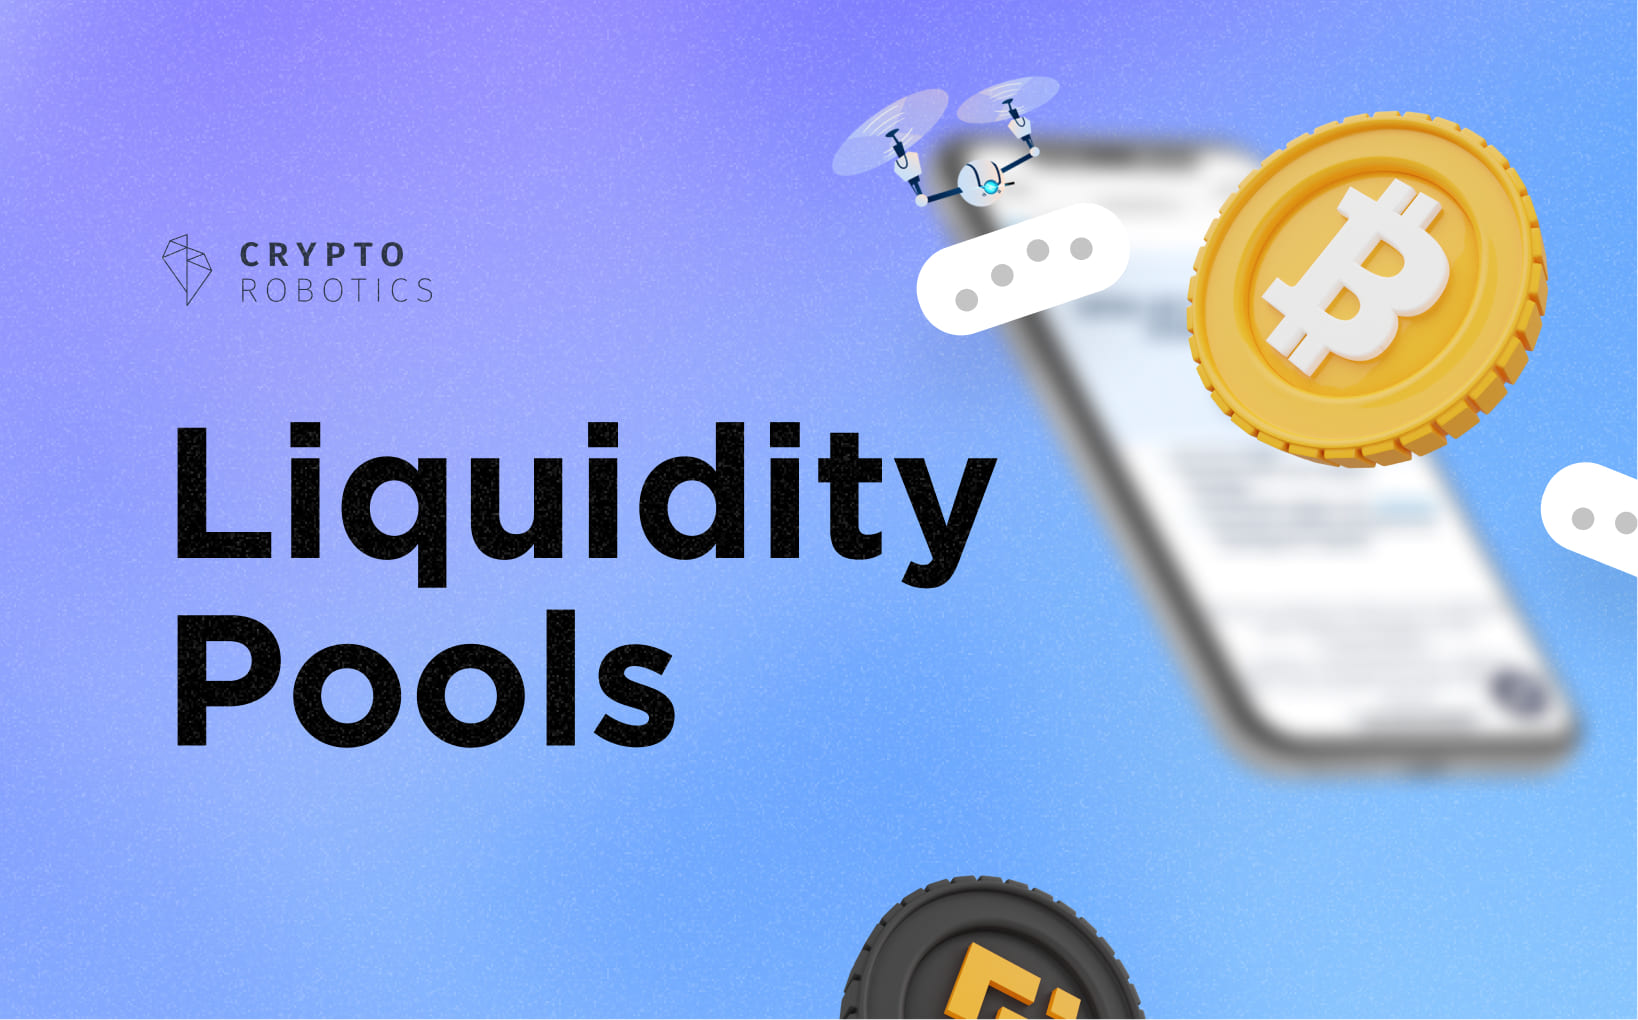 Liquidity pools